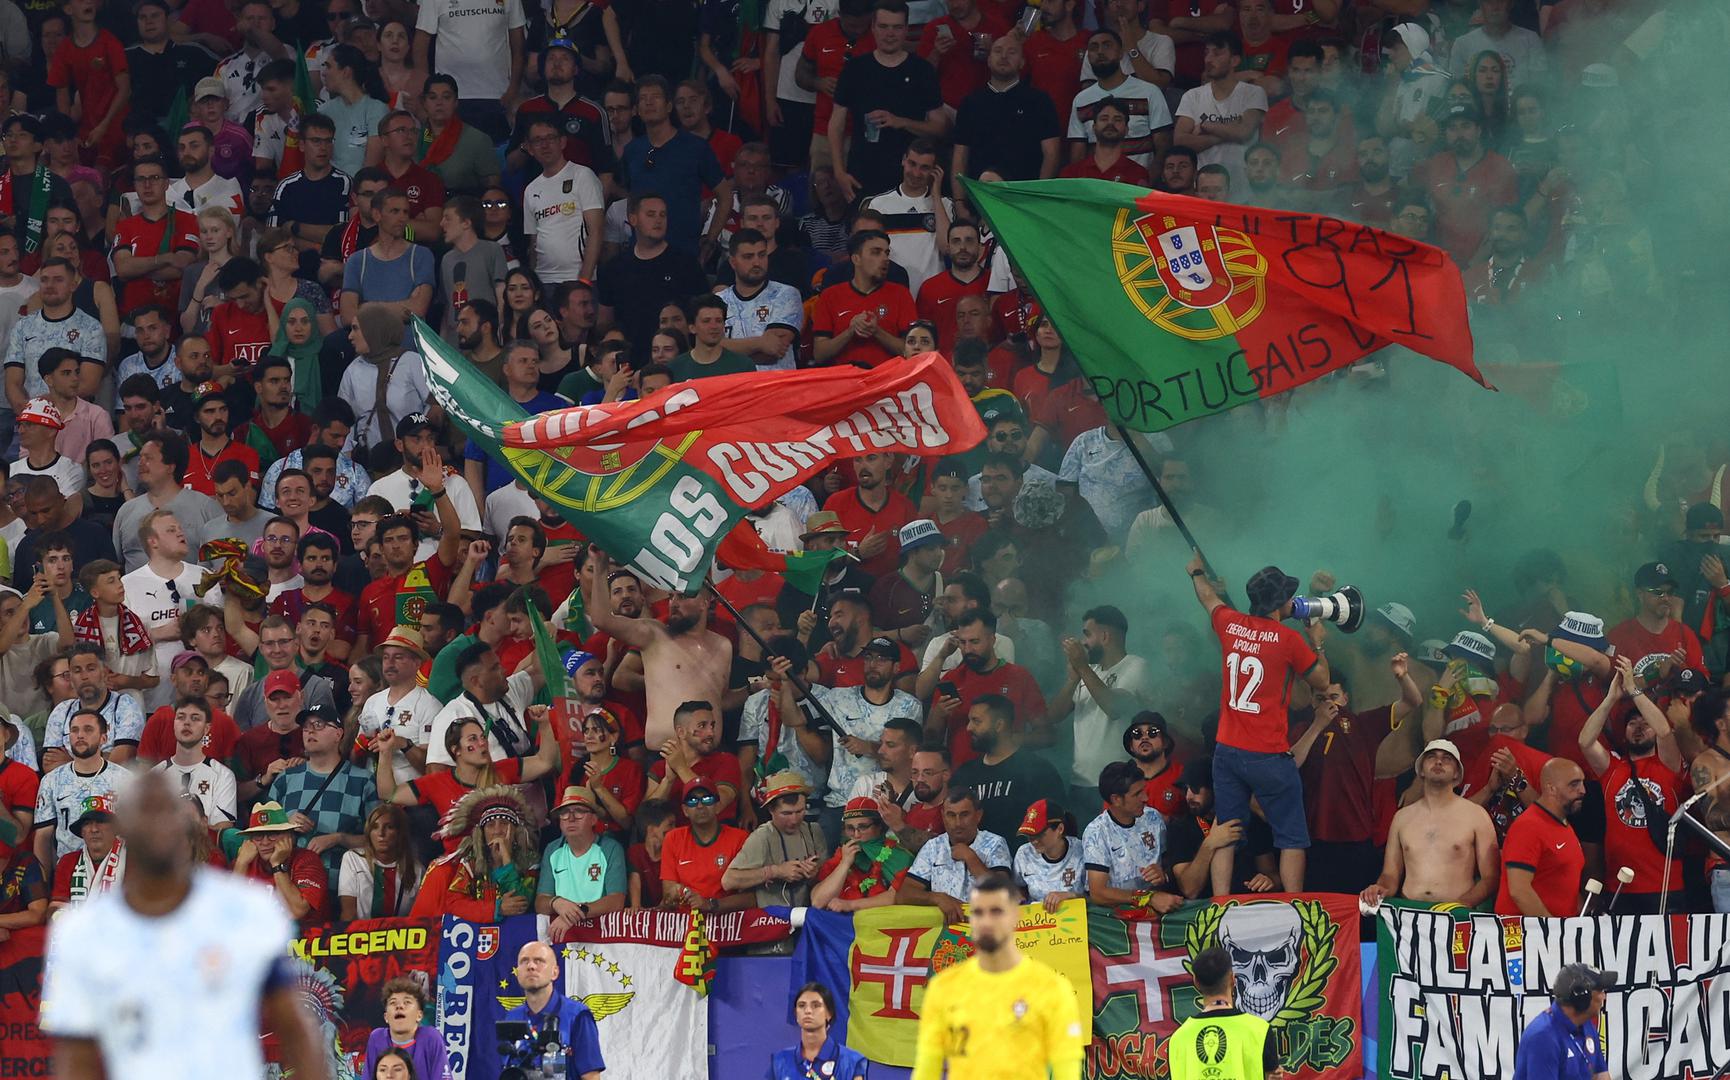 Na 21. mjestu su Portugalci, samo 37.000 navijača došlo je uživo gledati kapetana Cristiana Ronalda i društvo.

